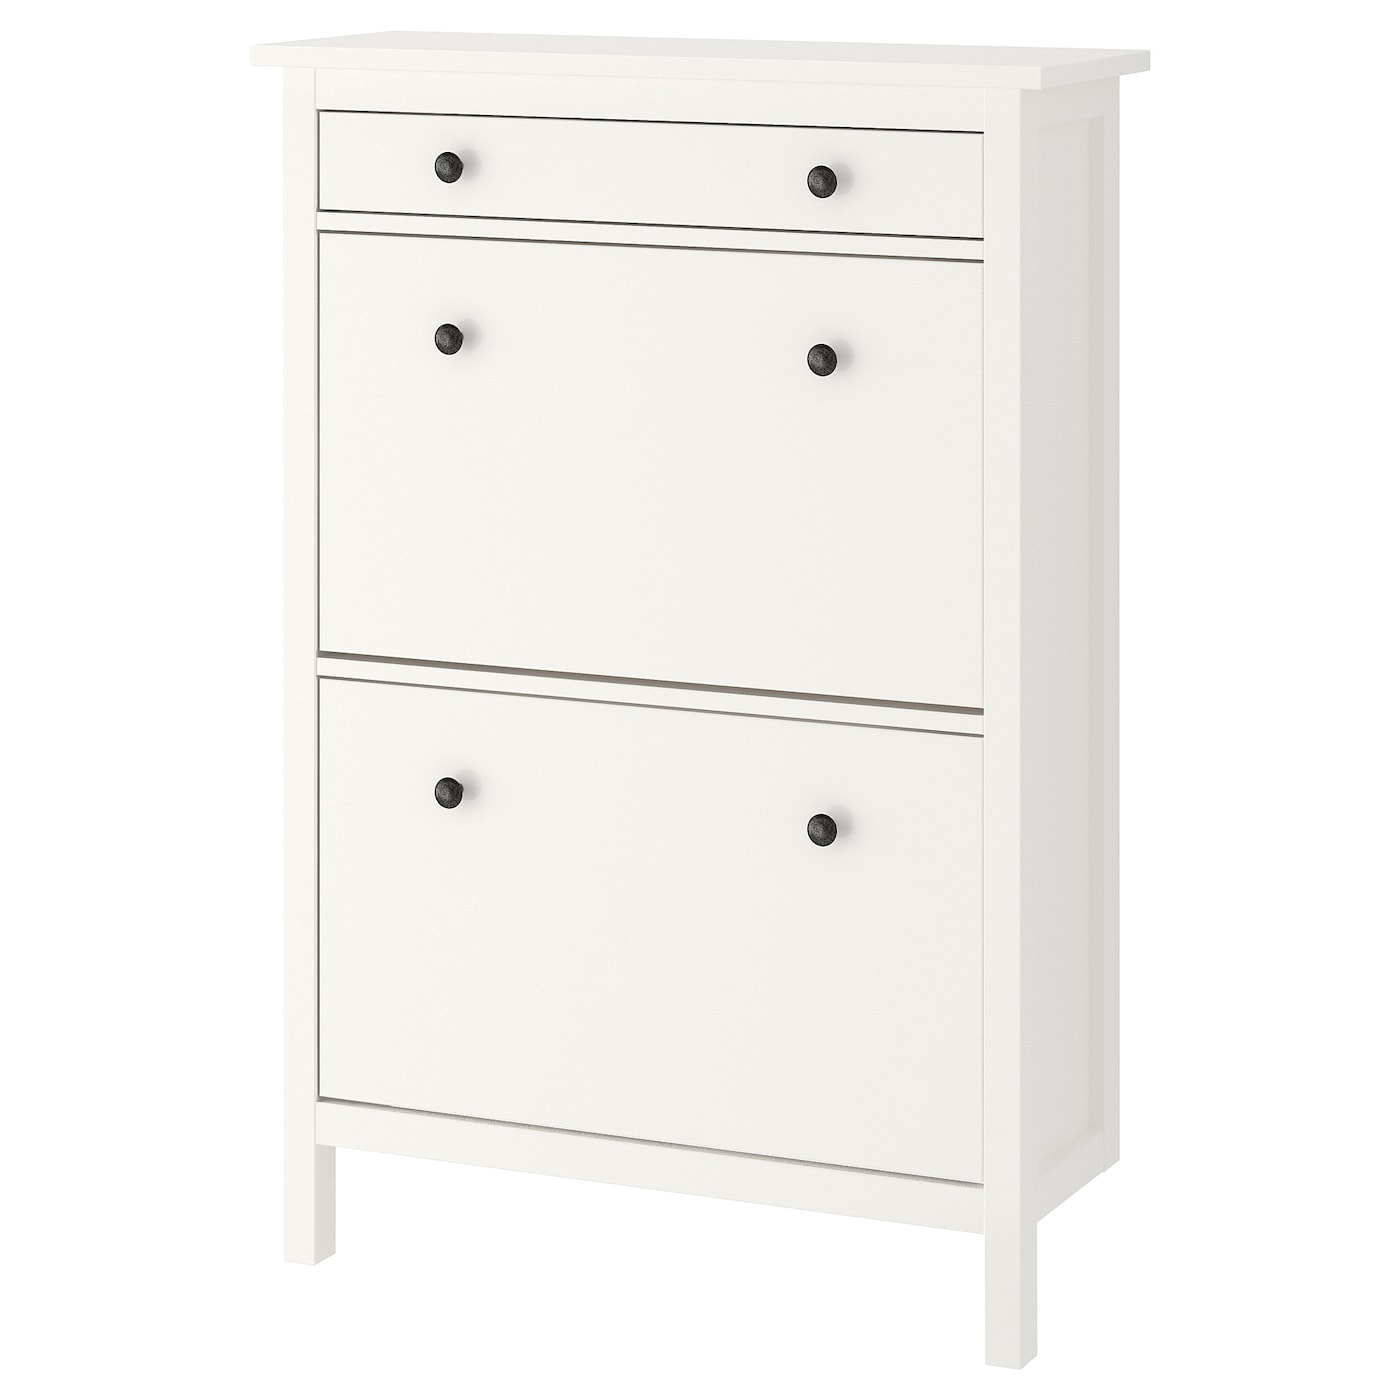 Обувной шкаф/хранение - IKEA HEMNES/ХЕМНЭС ИКЕА, 89x127 см, белый